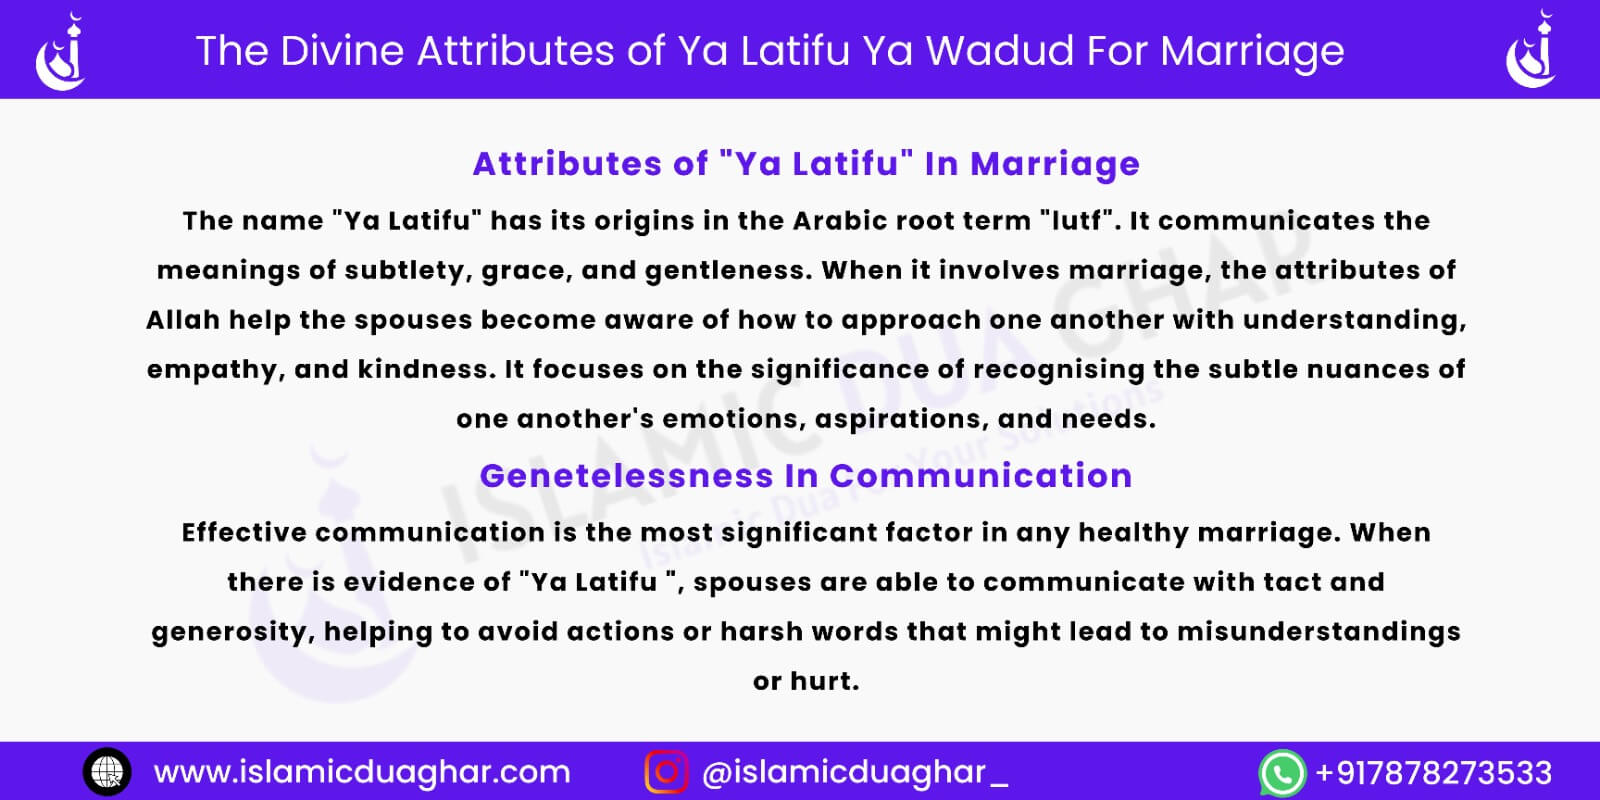 Ya Latifu Ya Wadud For Marriage